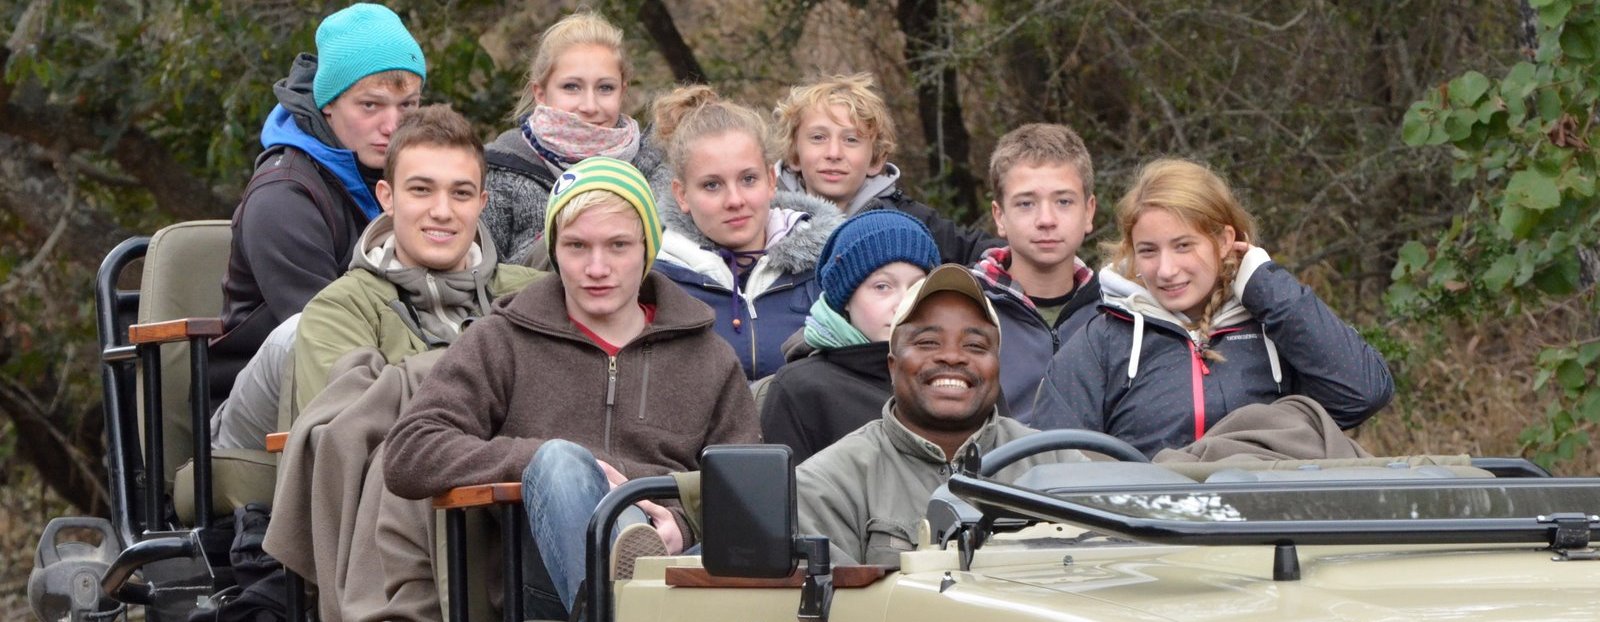 For Family & Teens Reisen - Familienreisen mit Jugendlichen - Teenager im Jeep